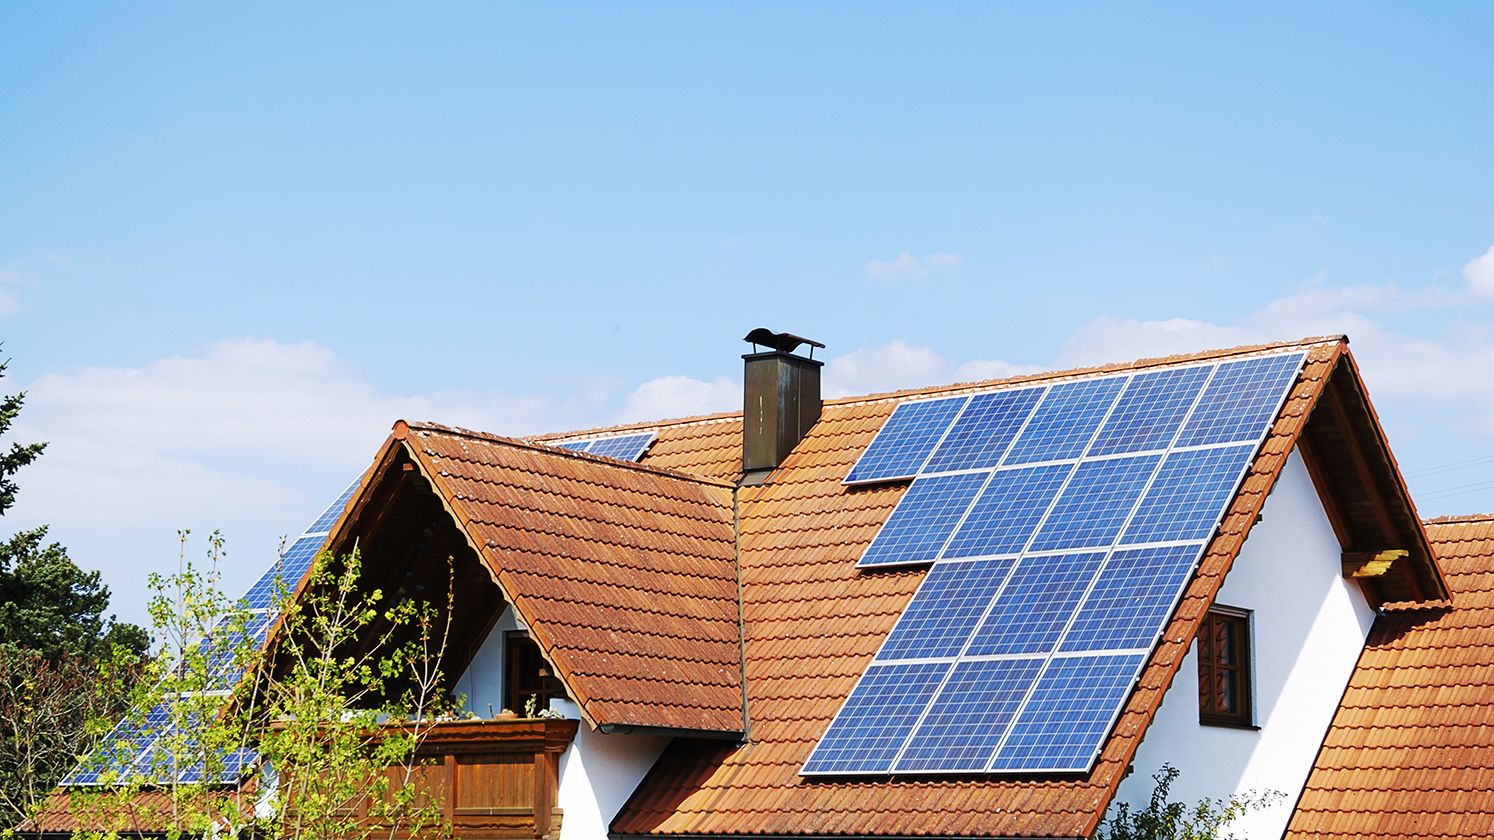 Guía para realizar una instalación fotovoltaica paso a paso